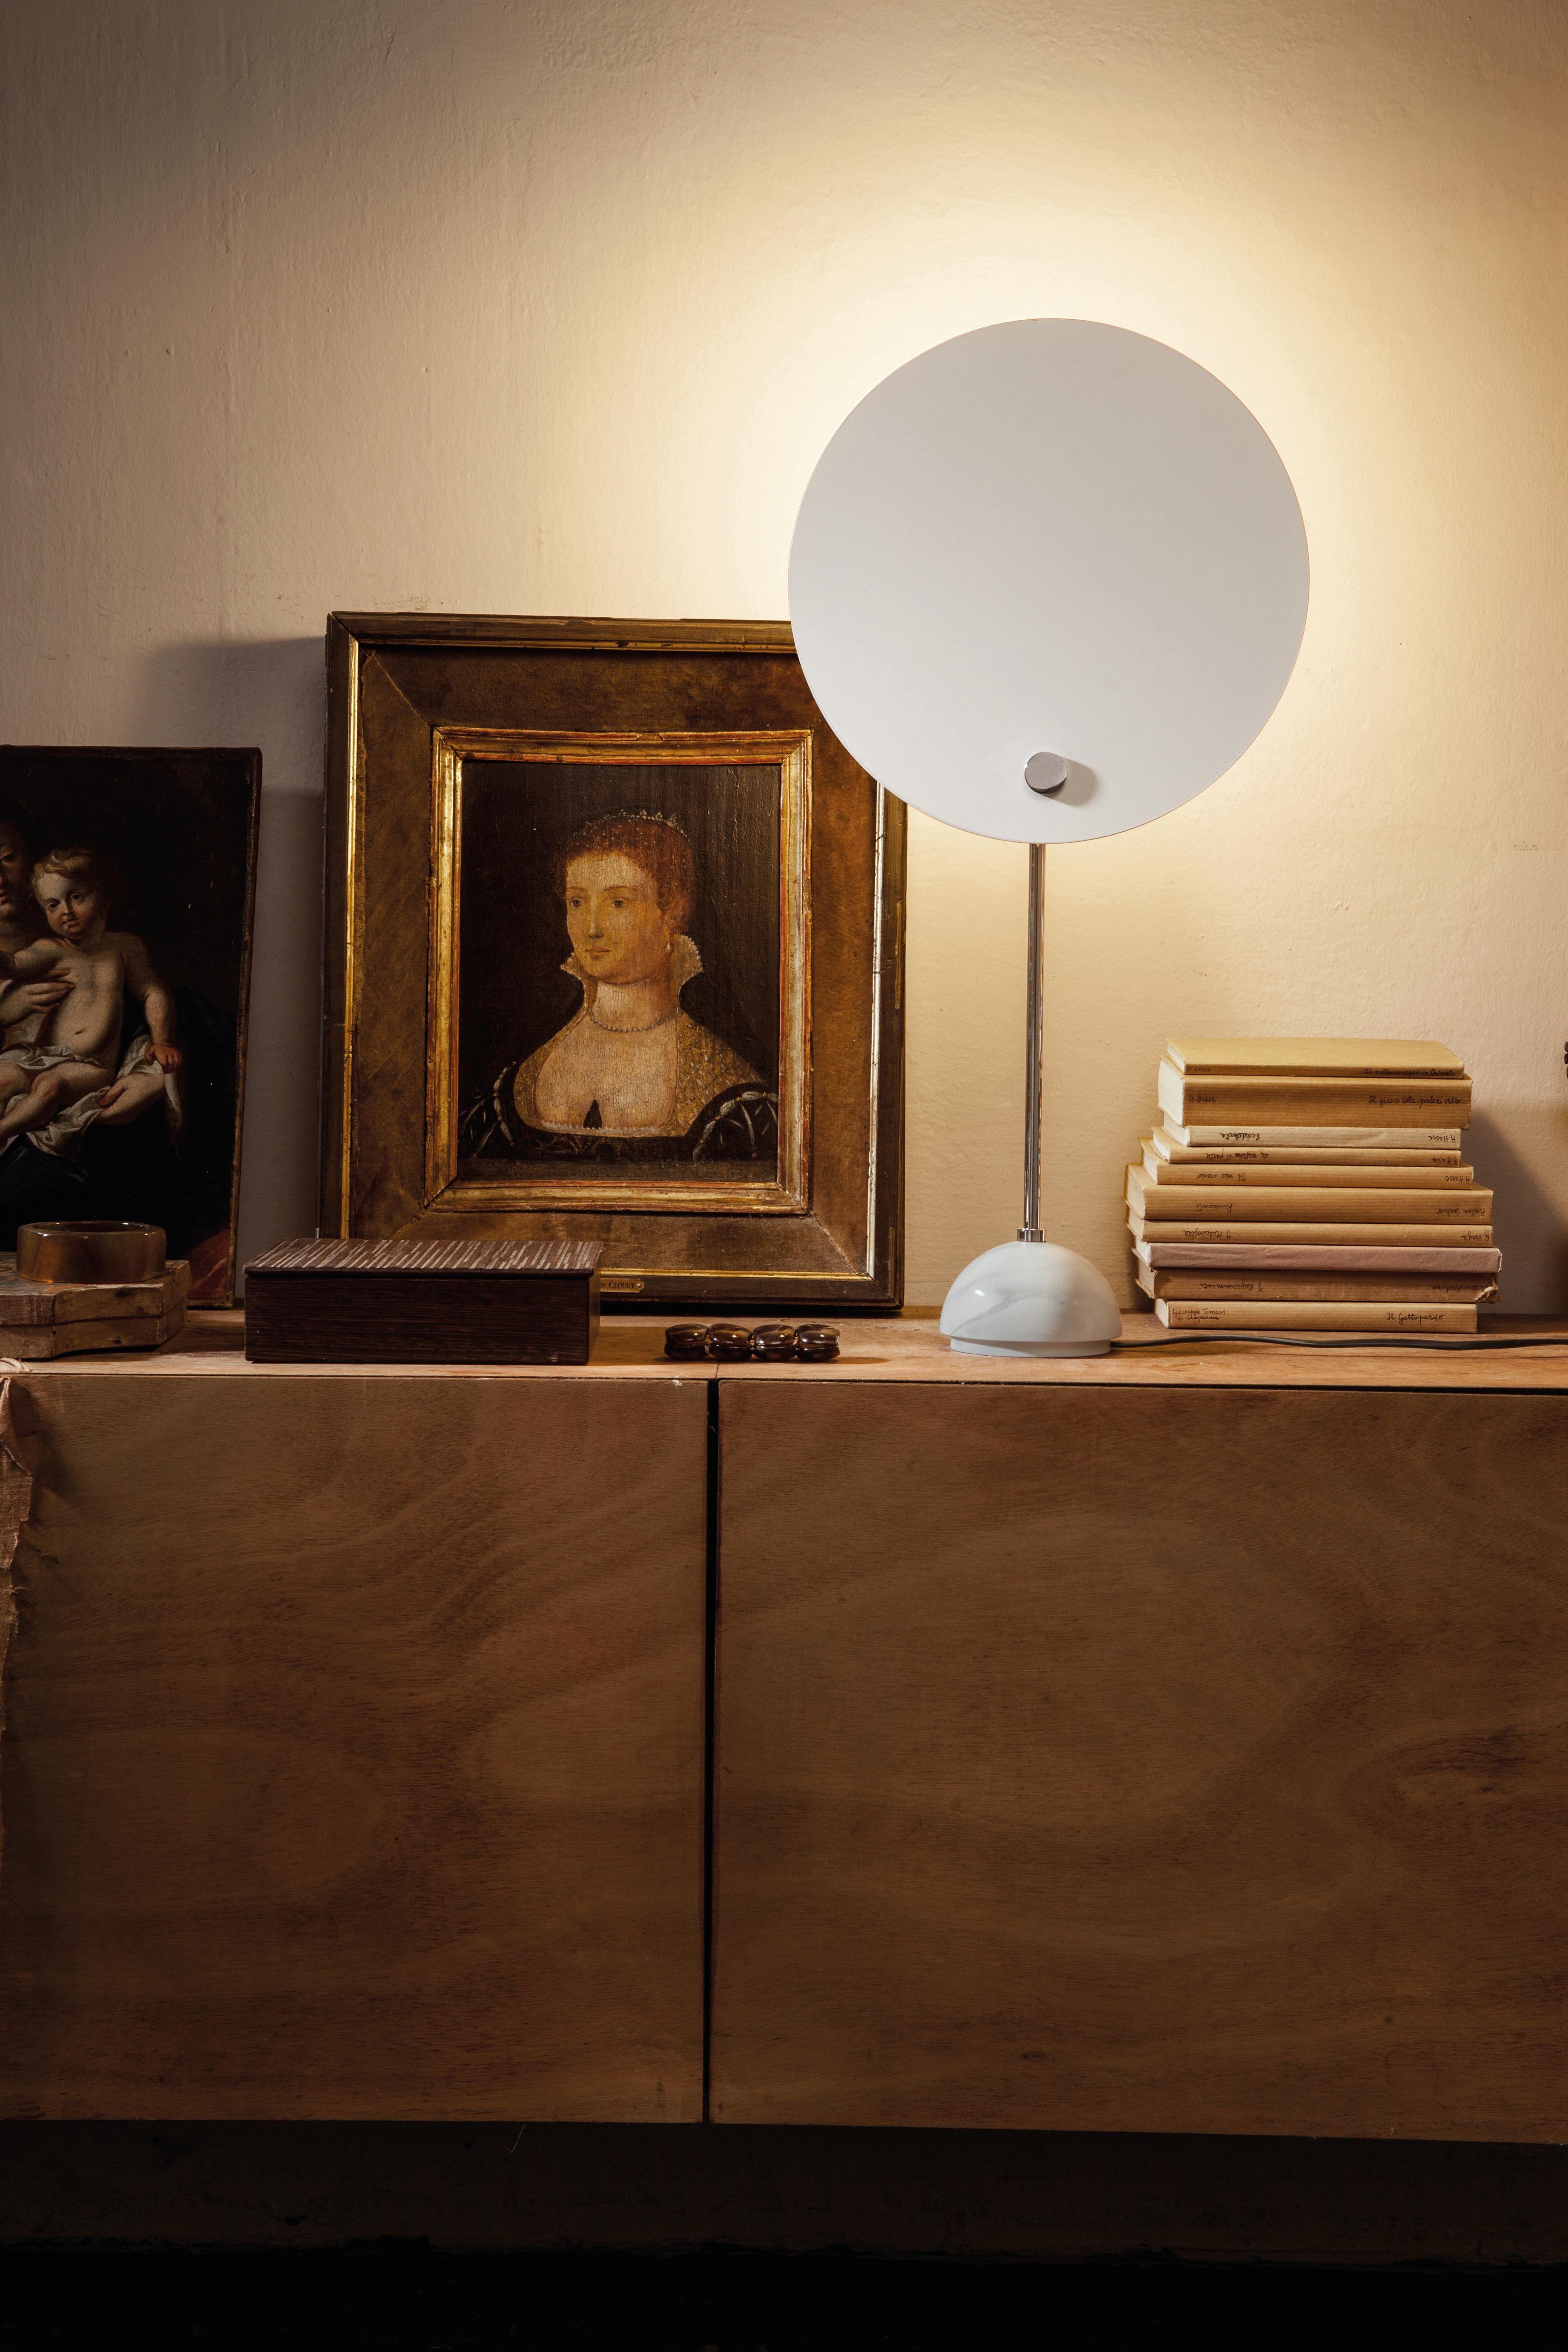 Lampe de table 'Kuta' de Vico Magistretti pour Nemo en blanc.

Une lampe de table avec un réflecteur circulaire exécuté en aluminium, ce design astucieux donne l'effet d'une éclipse solaire. Présentant un écran circulaire peint en blanc ou en noir